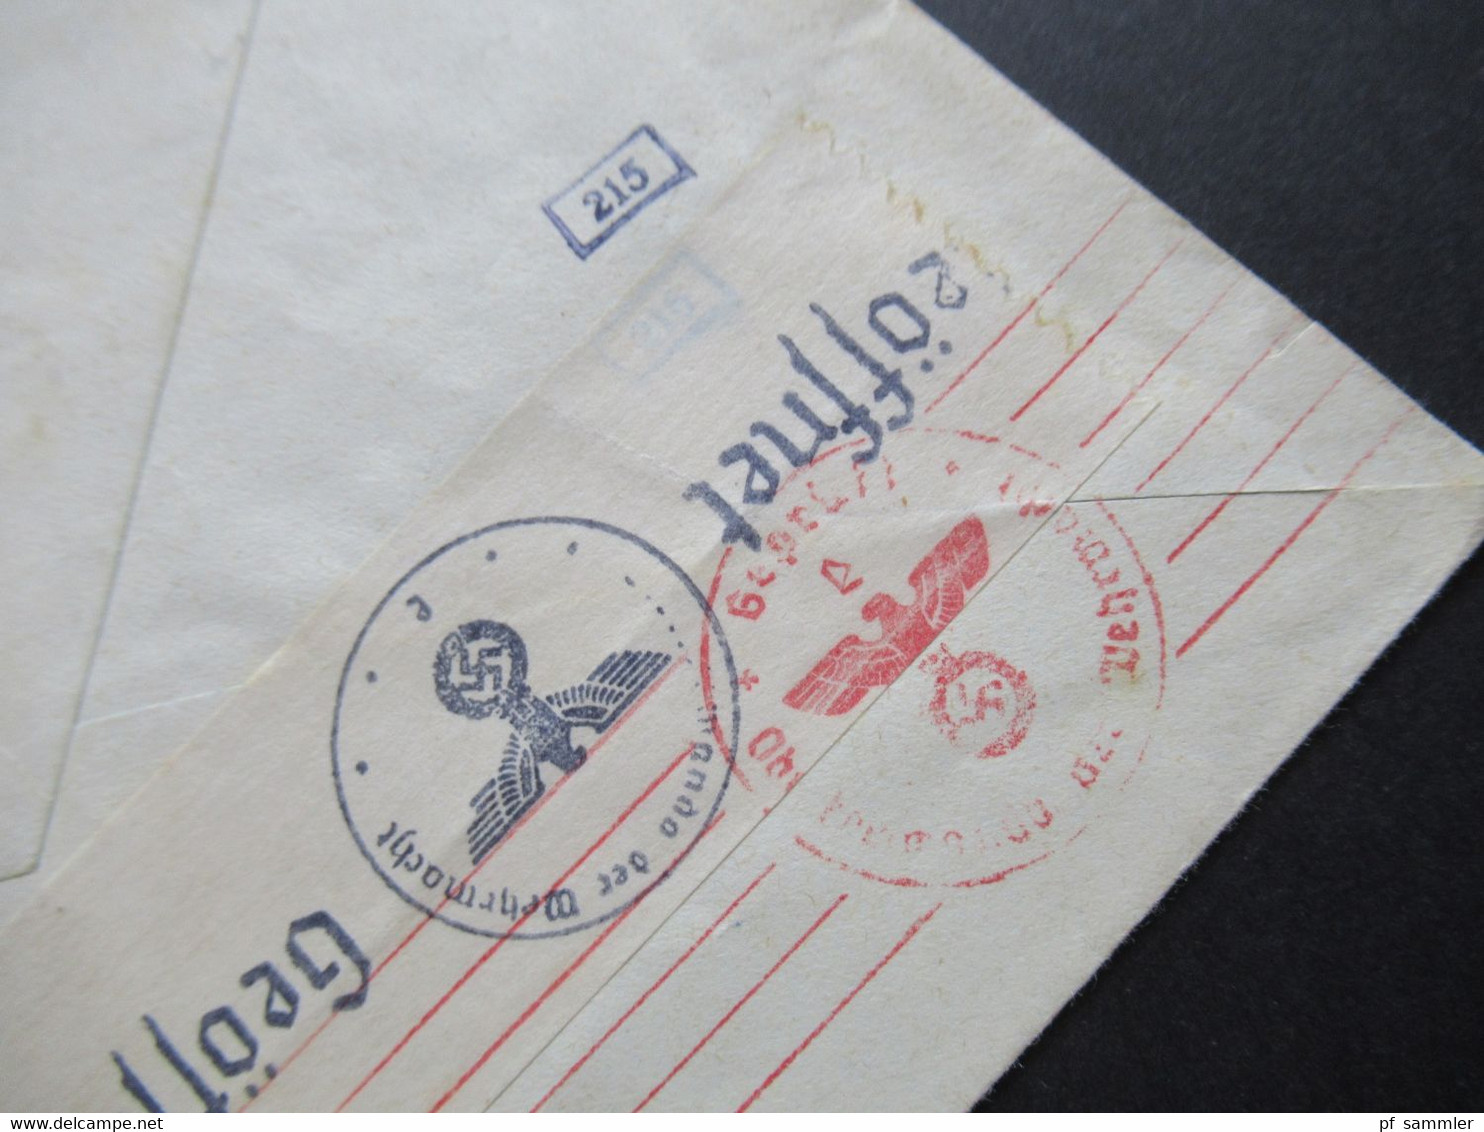 Schweiz 1941 Pro Aero Nr.395 Sonderflugpost Vol Postal Special nach Wittich OKW Zensurbeleg Mehrfachzensur / geöffnet